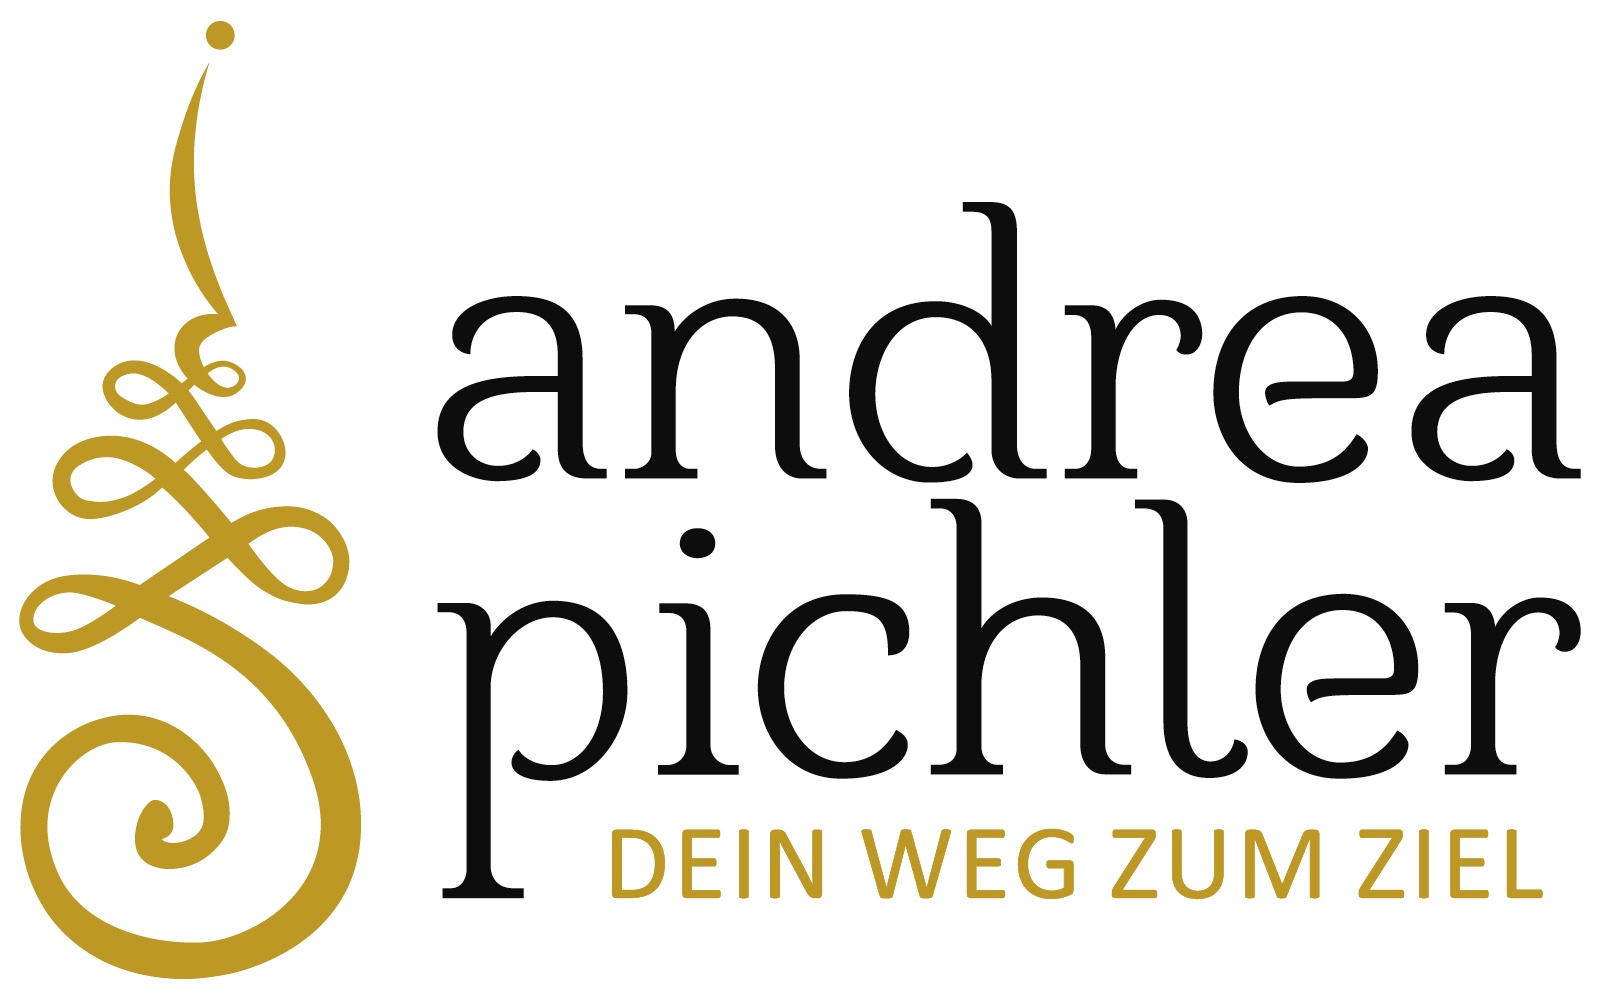 Andrea Pichler